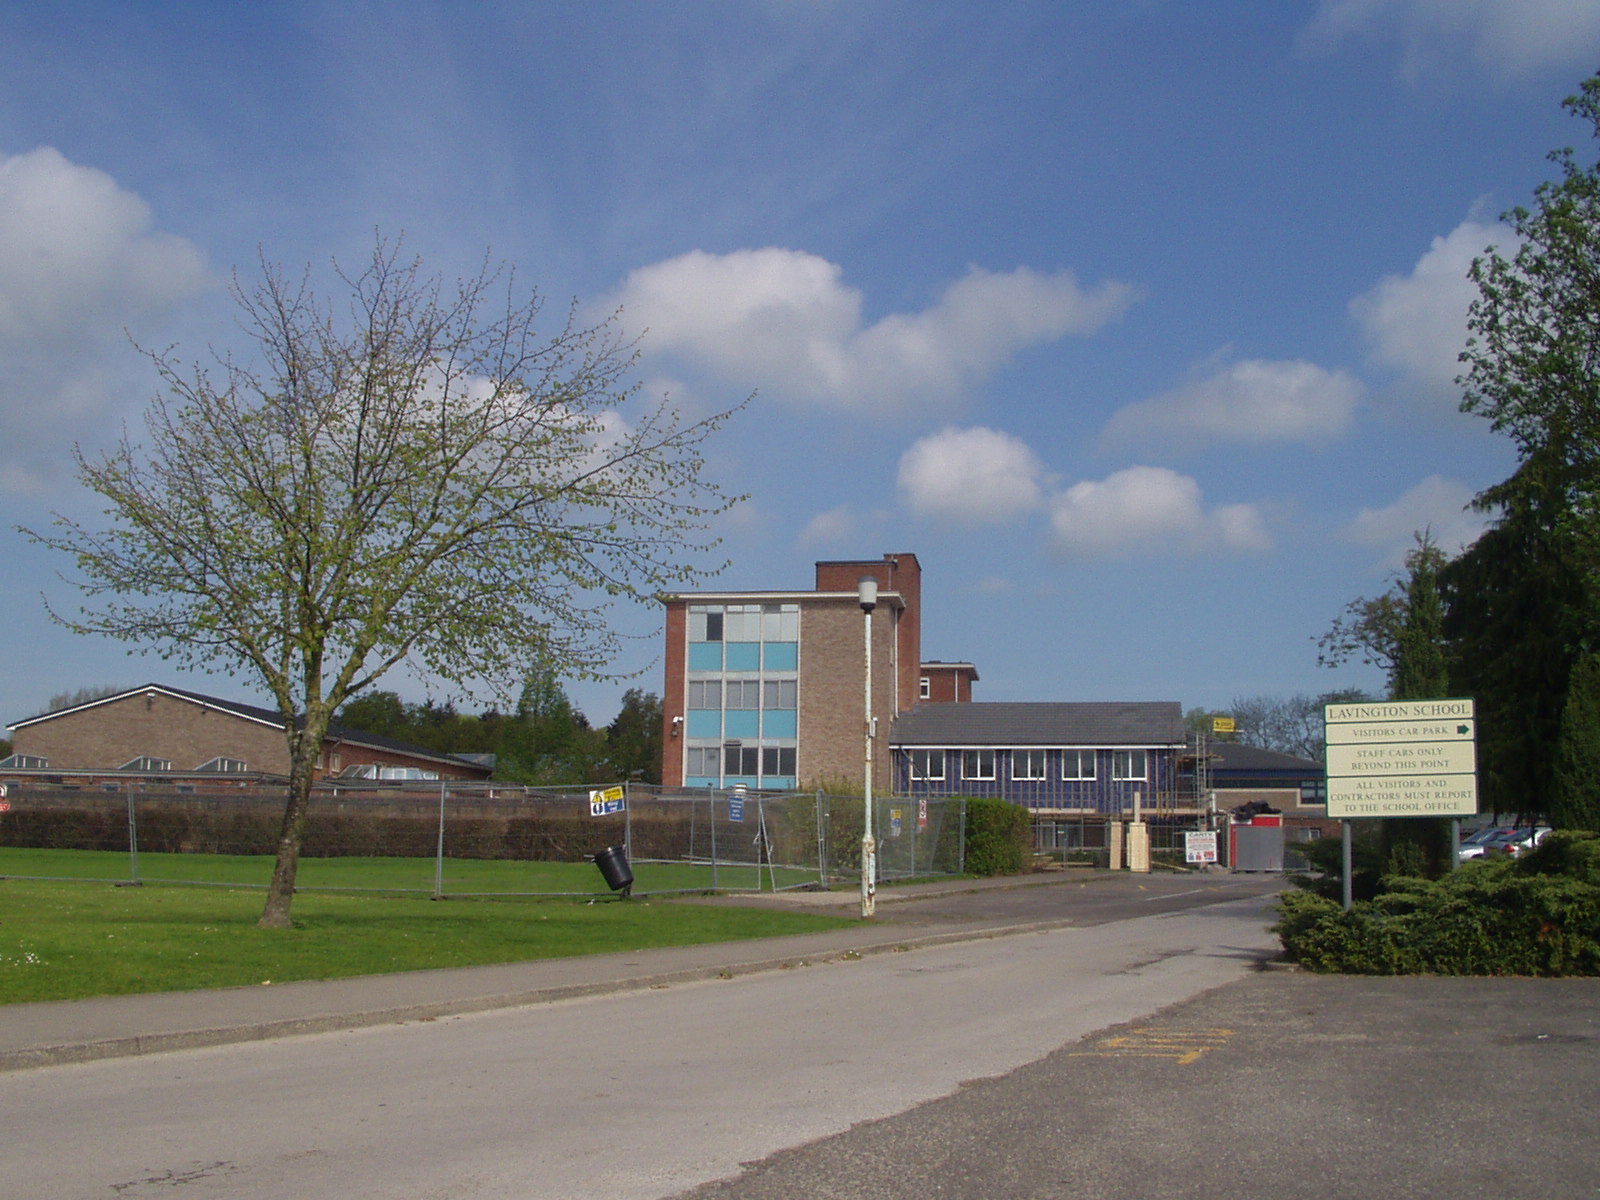 Lavington School